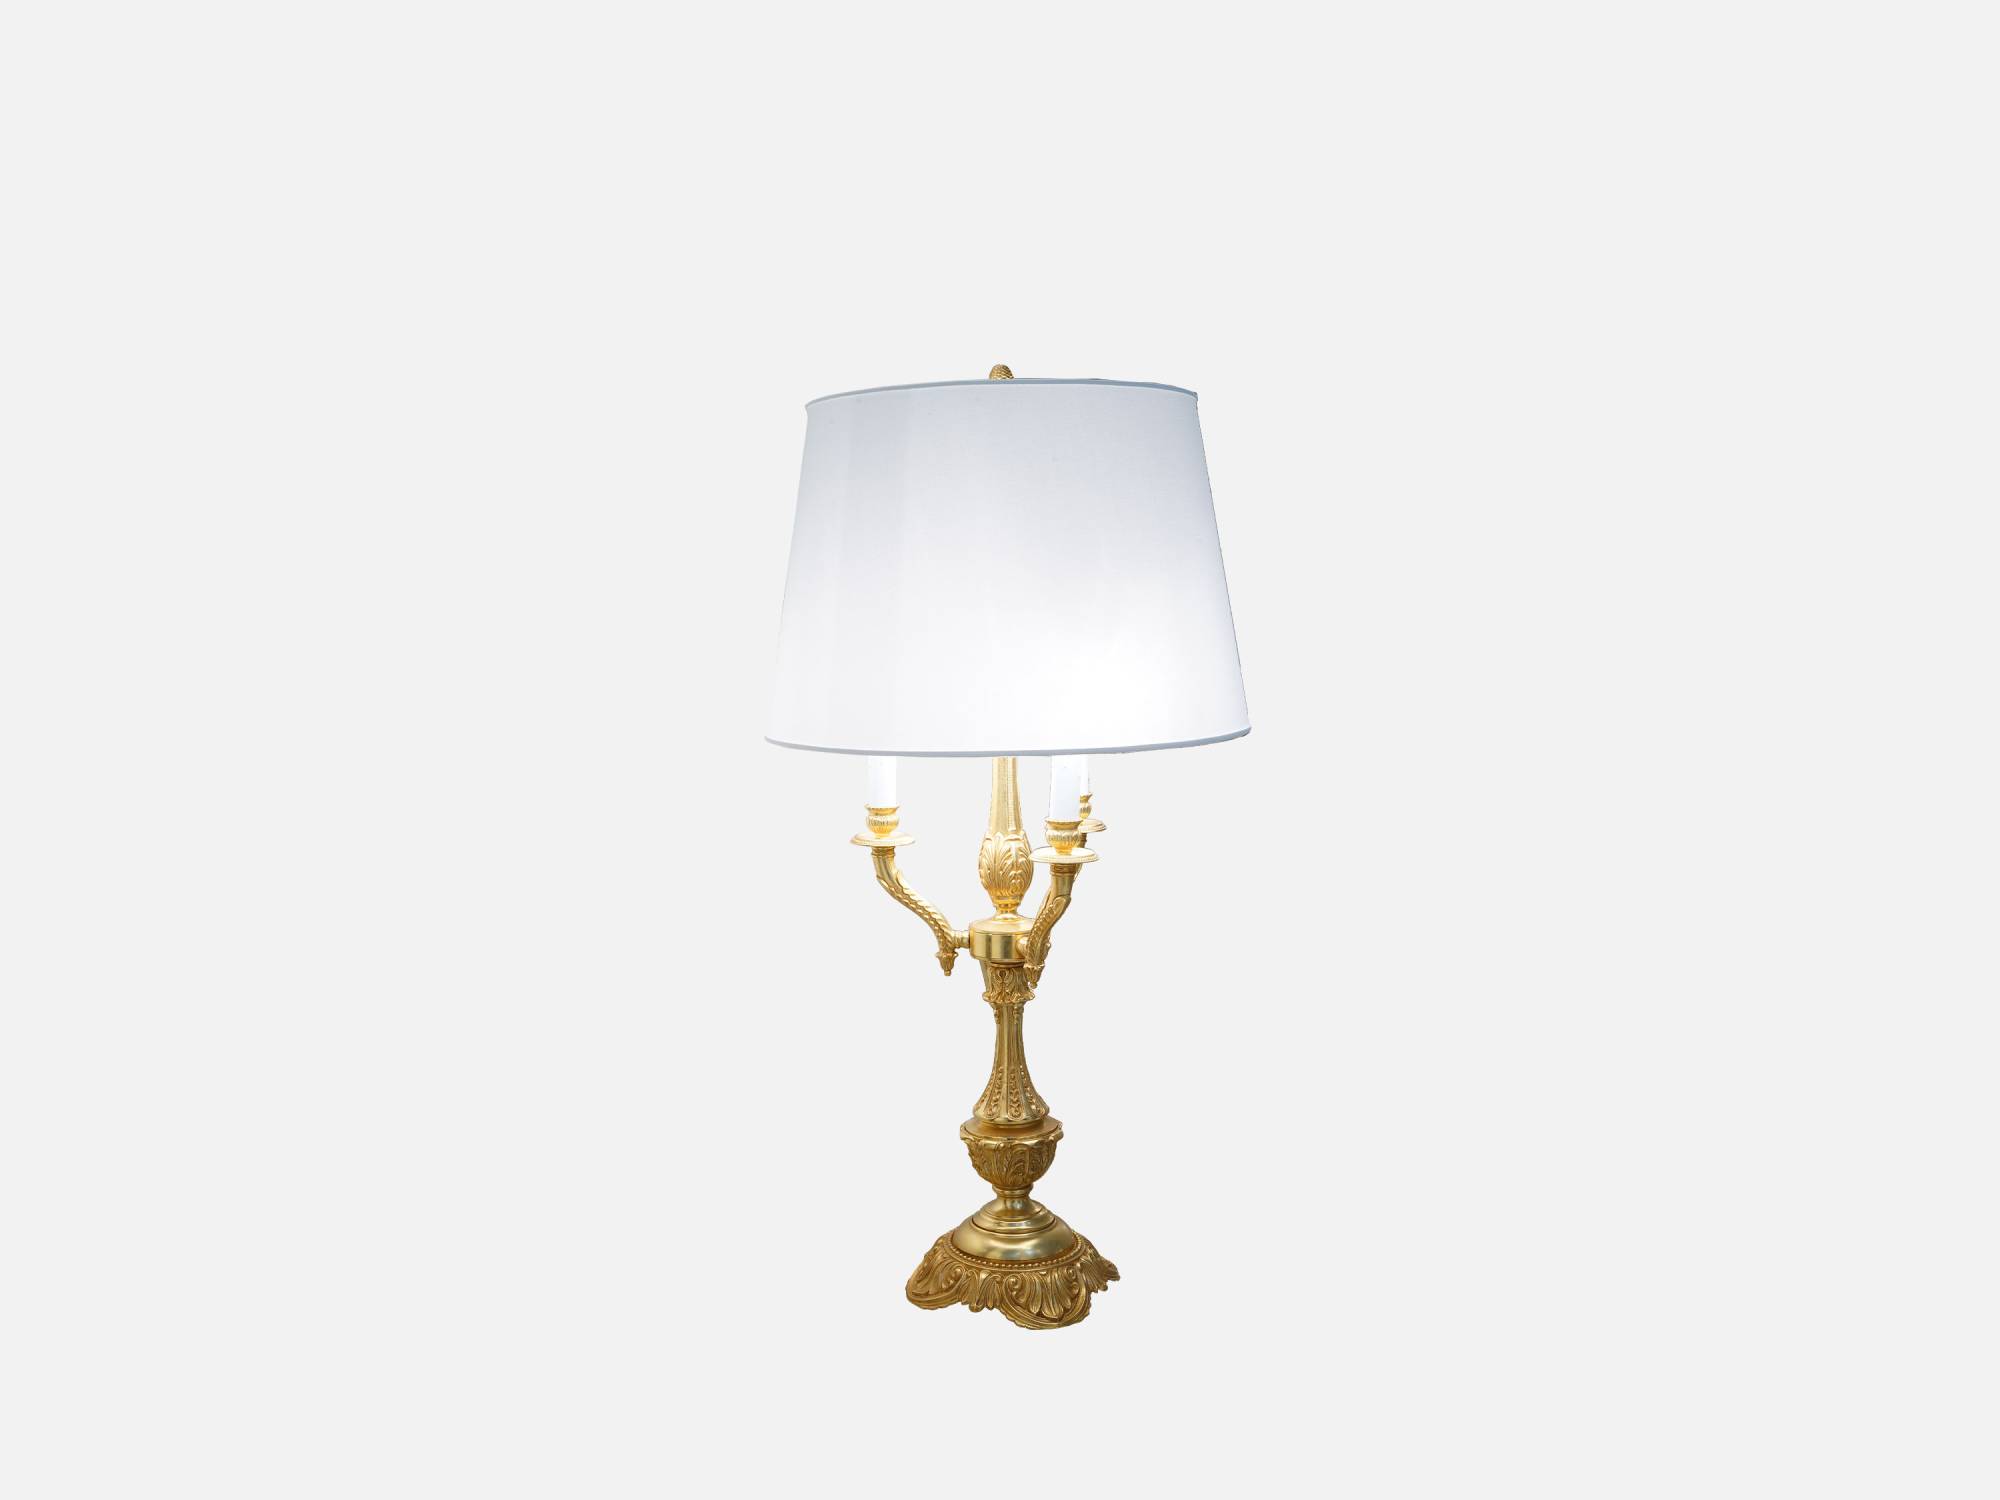 ART. 2198 – C.G. Capelletti Italian Luxury Classic Lighting. Made in Italy classic interior design